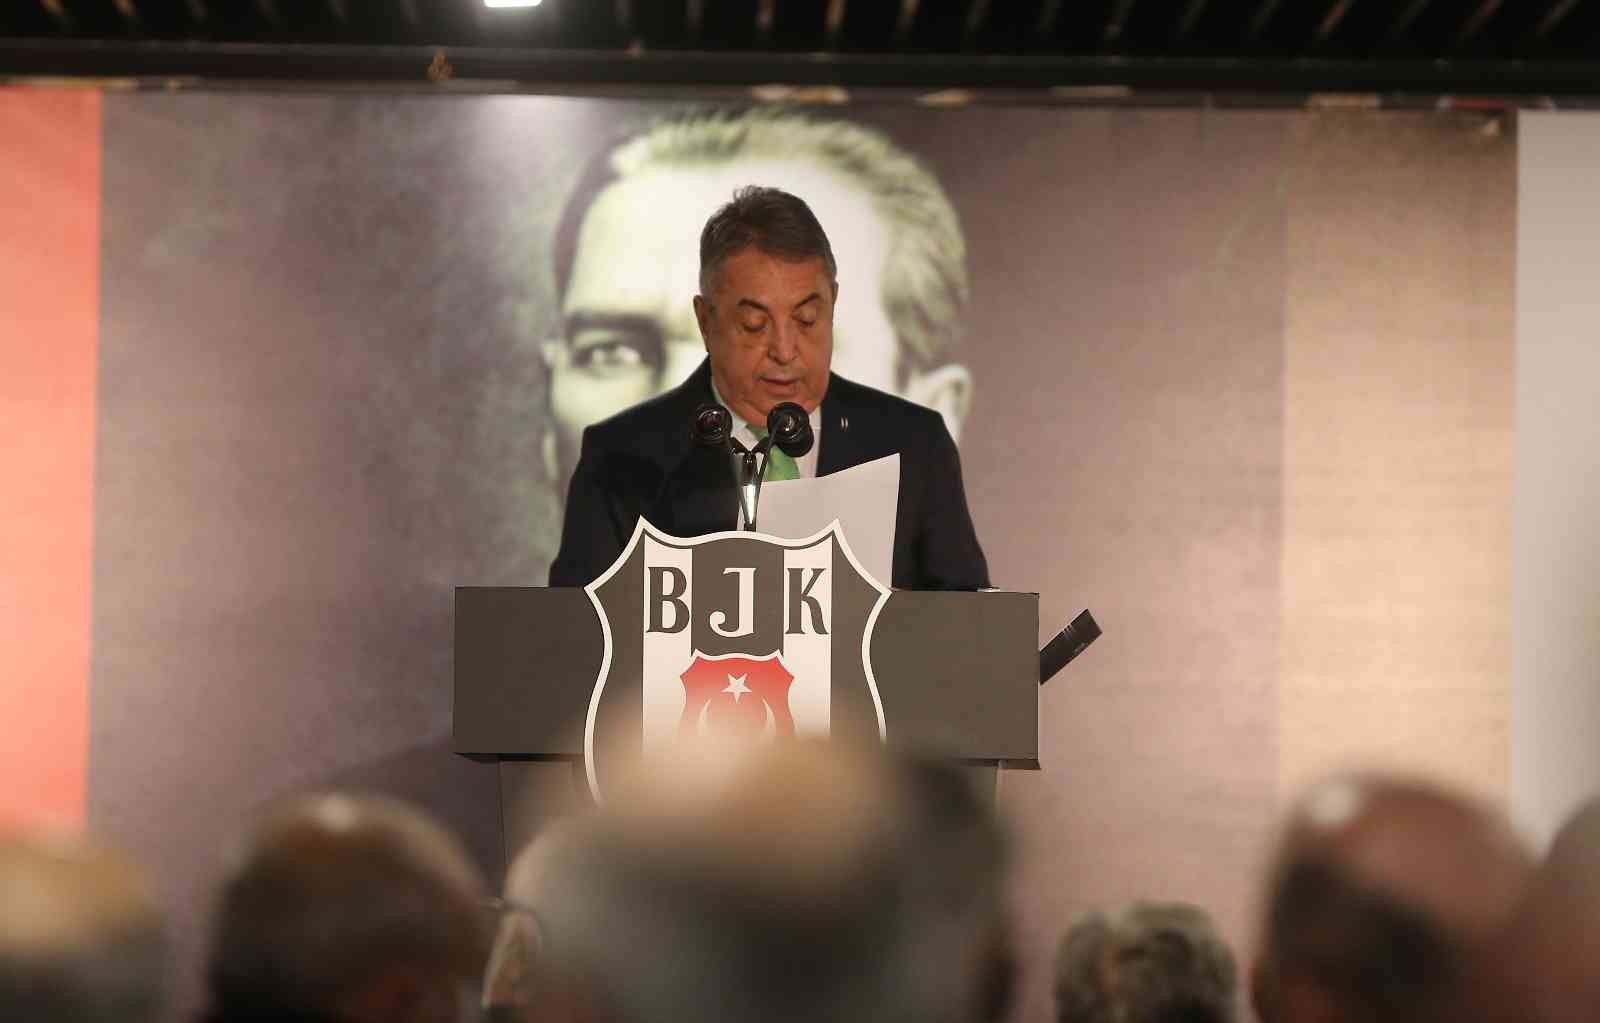 Beşiktaş Eski Başkanı Fikret Orman, Divan Kurulu Toplantısı’na geldi #istanbul